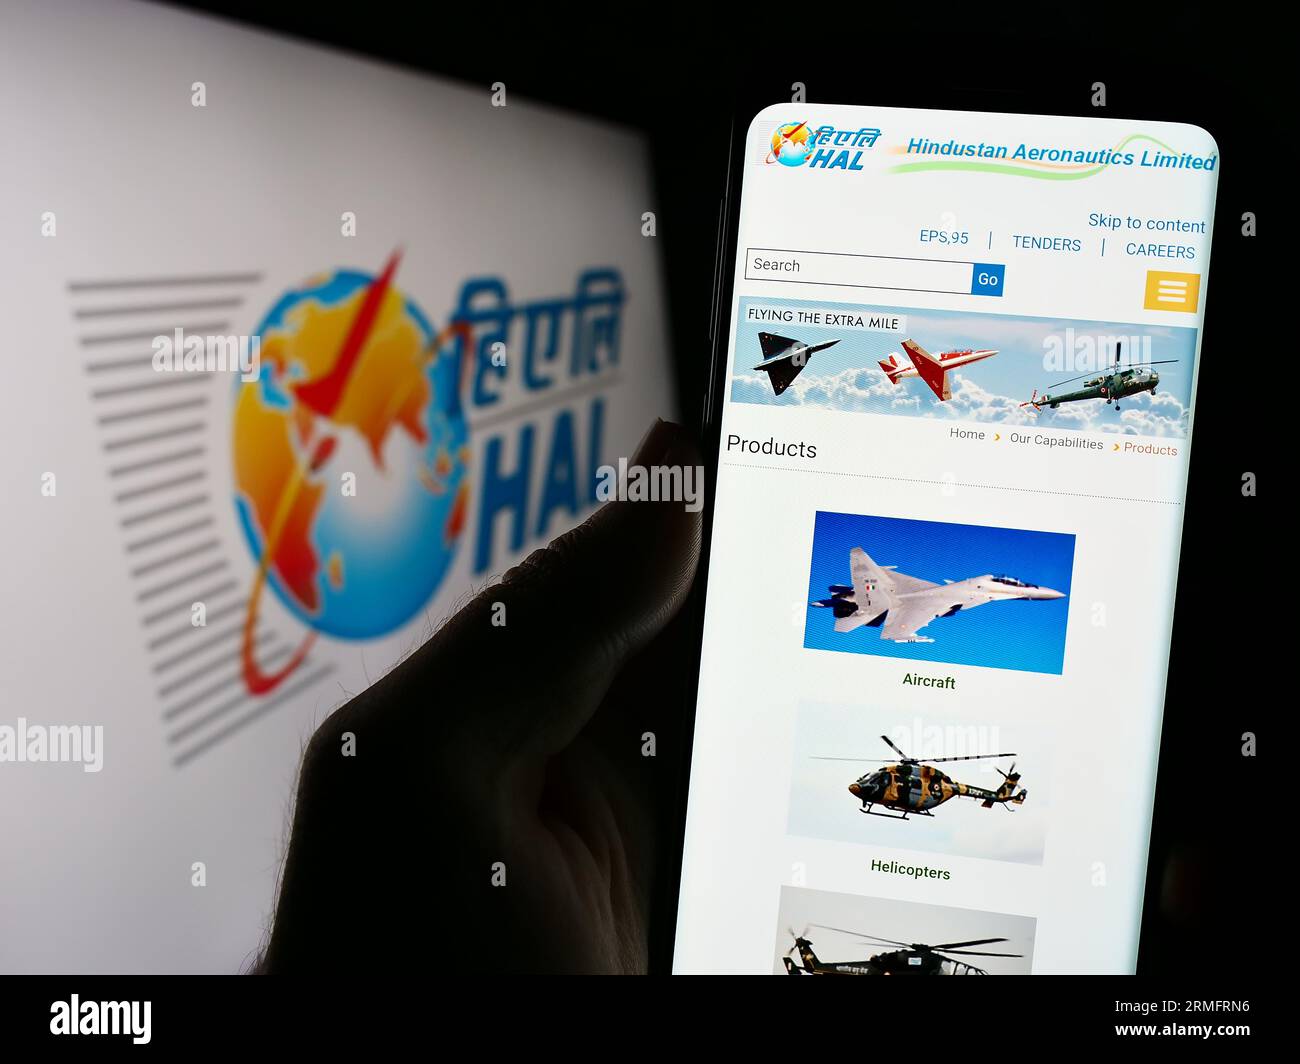 Personne tenant le smartphone avec la page Web de la société Hindustan Aeronautics Limited (HAL) sur l'écran avec logo. Concentrez-vous sur le centre de l'écran du téléphone. Banque D'Images